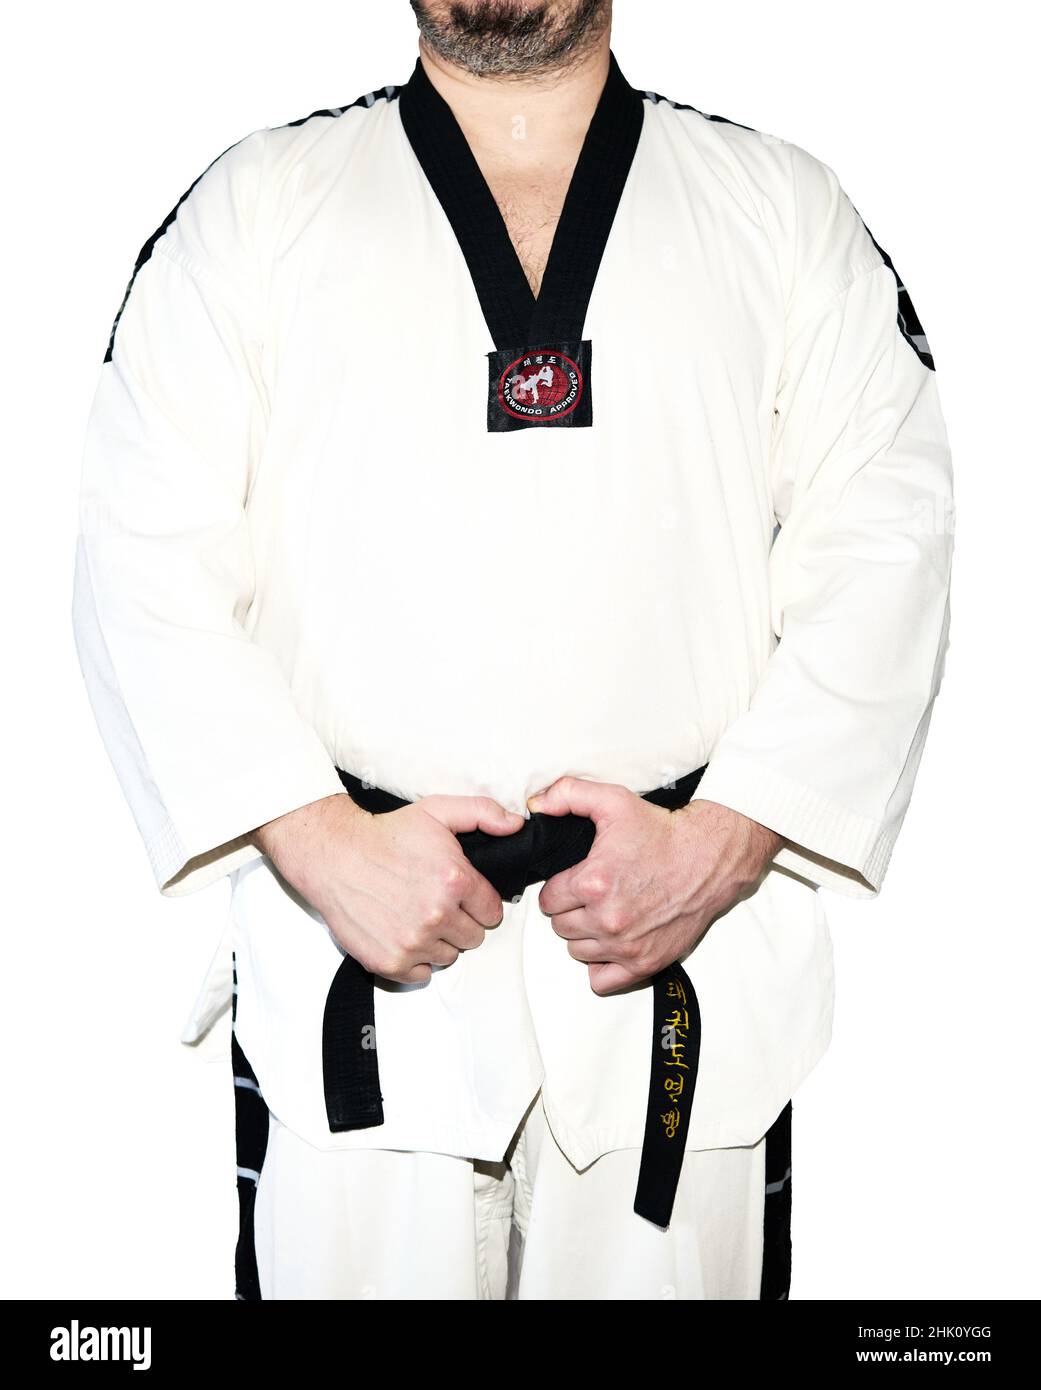 Mann in Taekwondo-Kampfkunstuniform, der seinen schwarzen Gürtel hält, wobei beide Hände auf dem weißen Hintergrund isoliert sind. Stockfoto